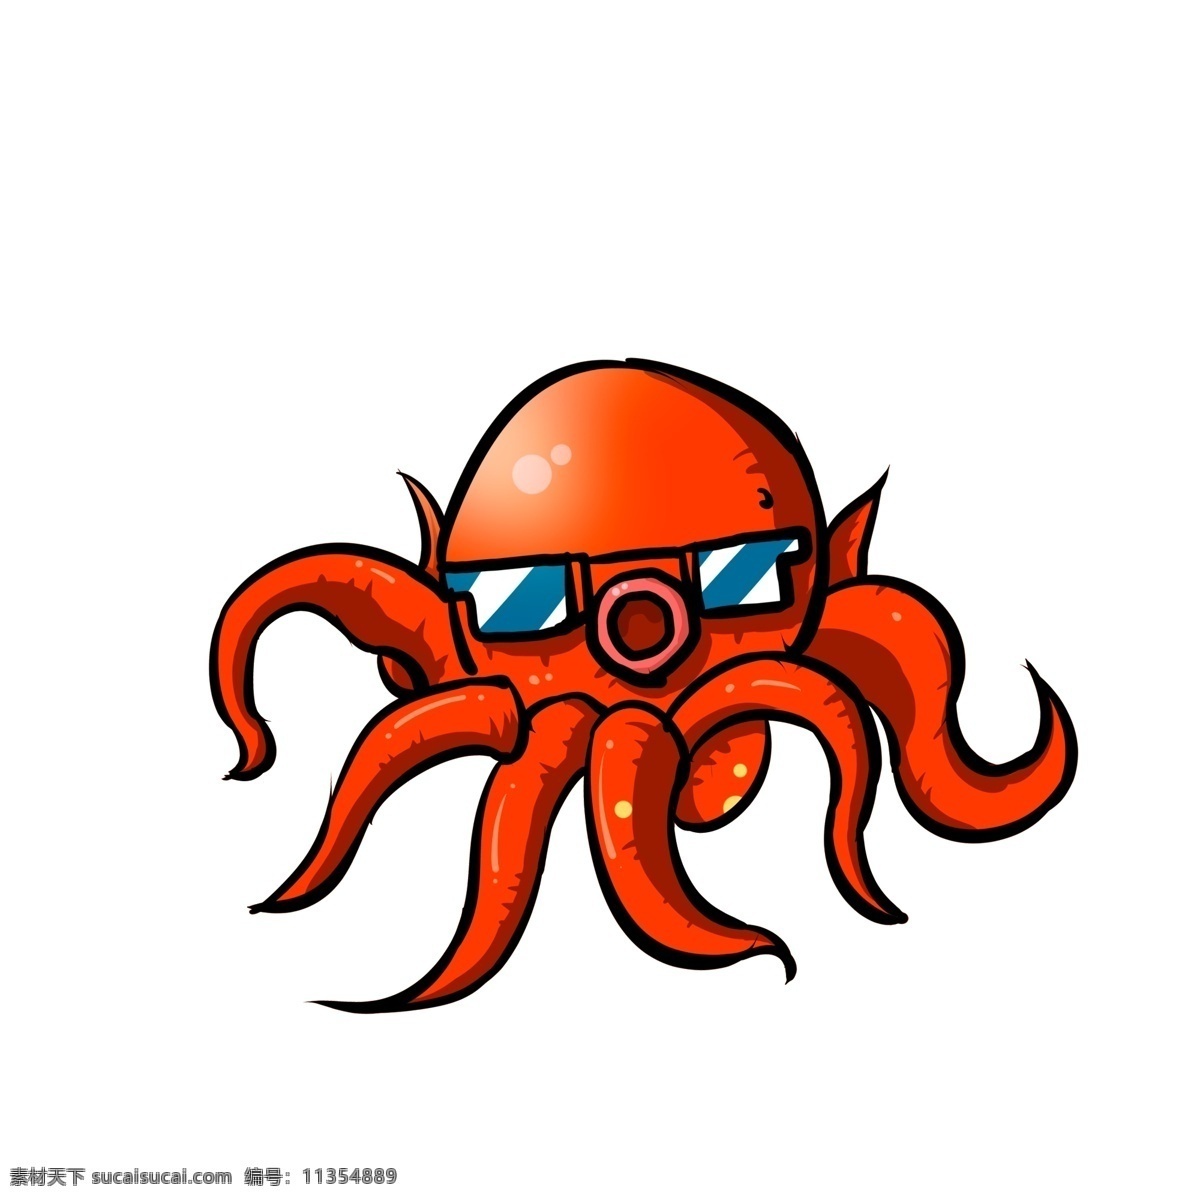 卡通 潮 漫 章鱼 元素 海洋生物 插画 动物设计 潮漫 psd元素